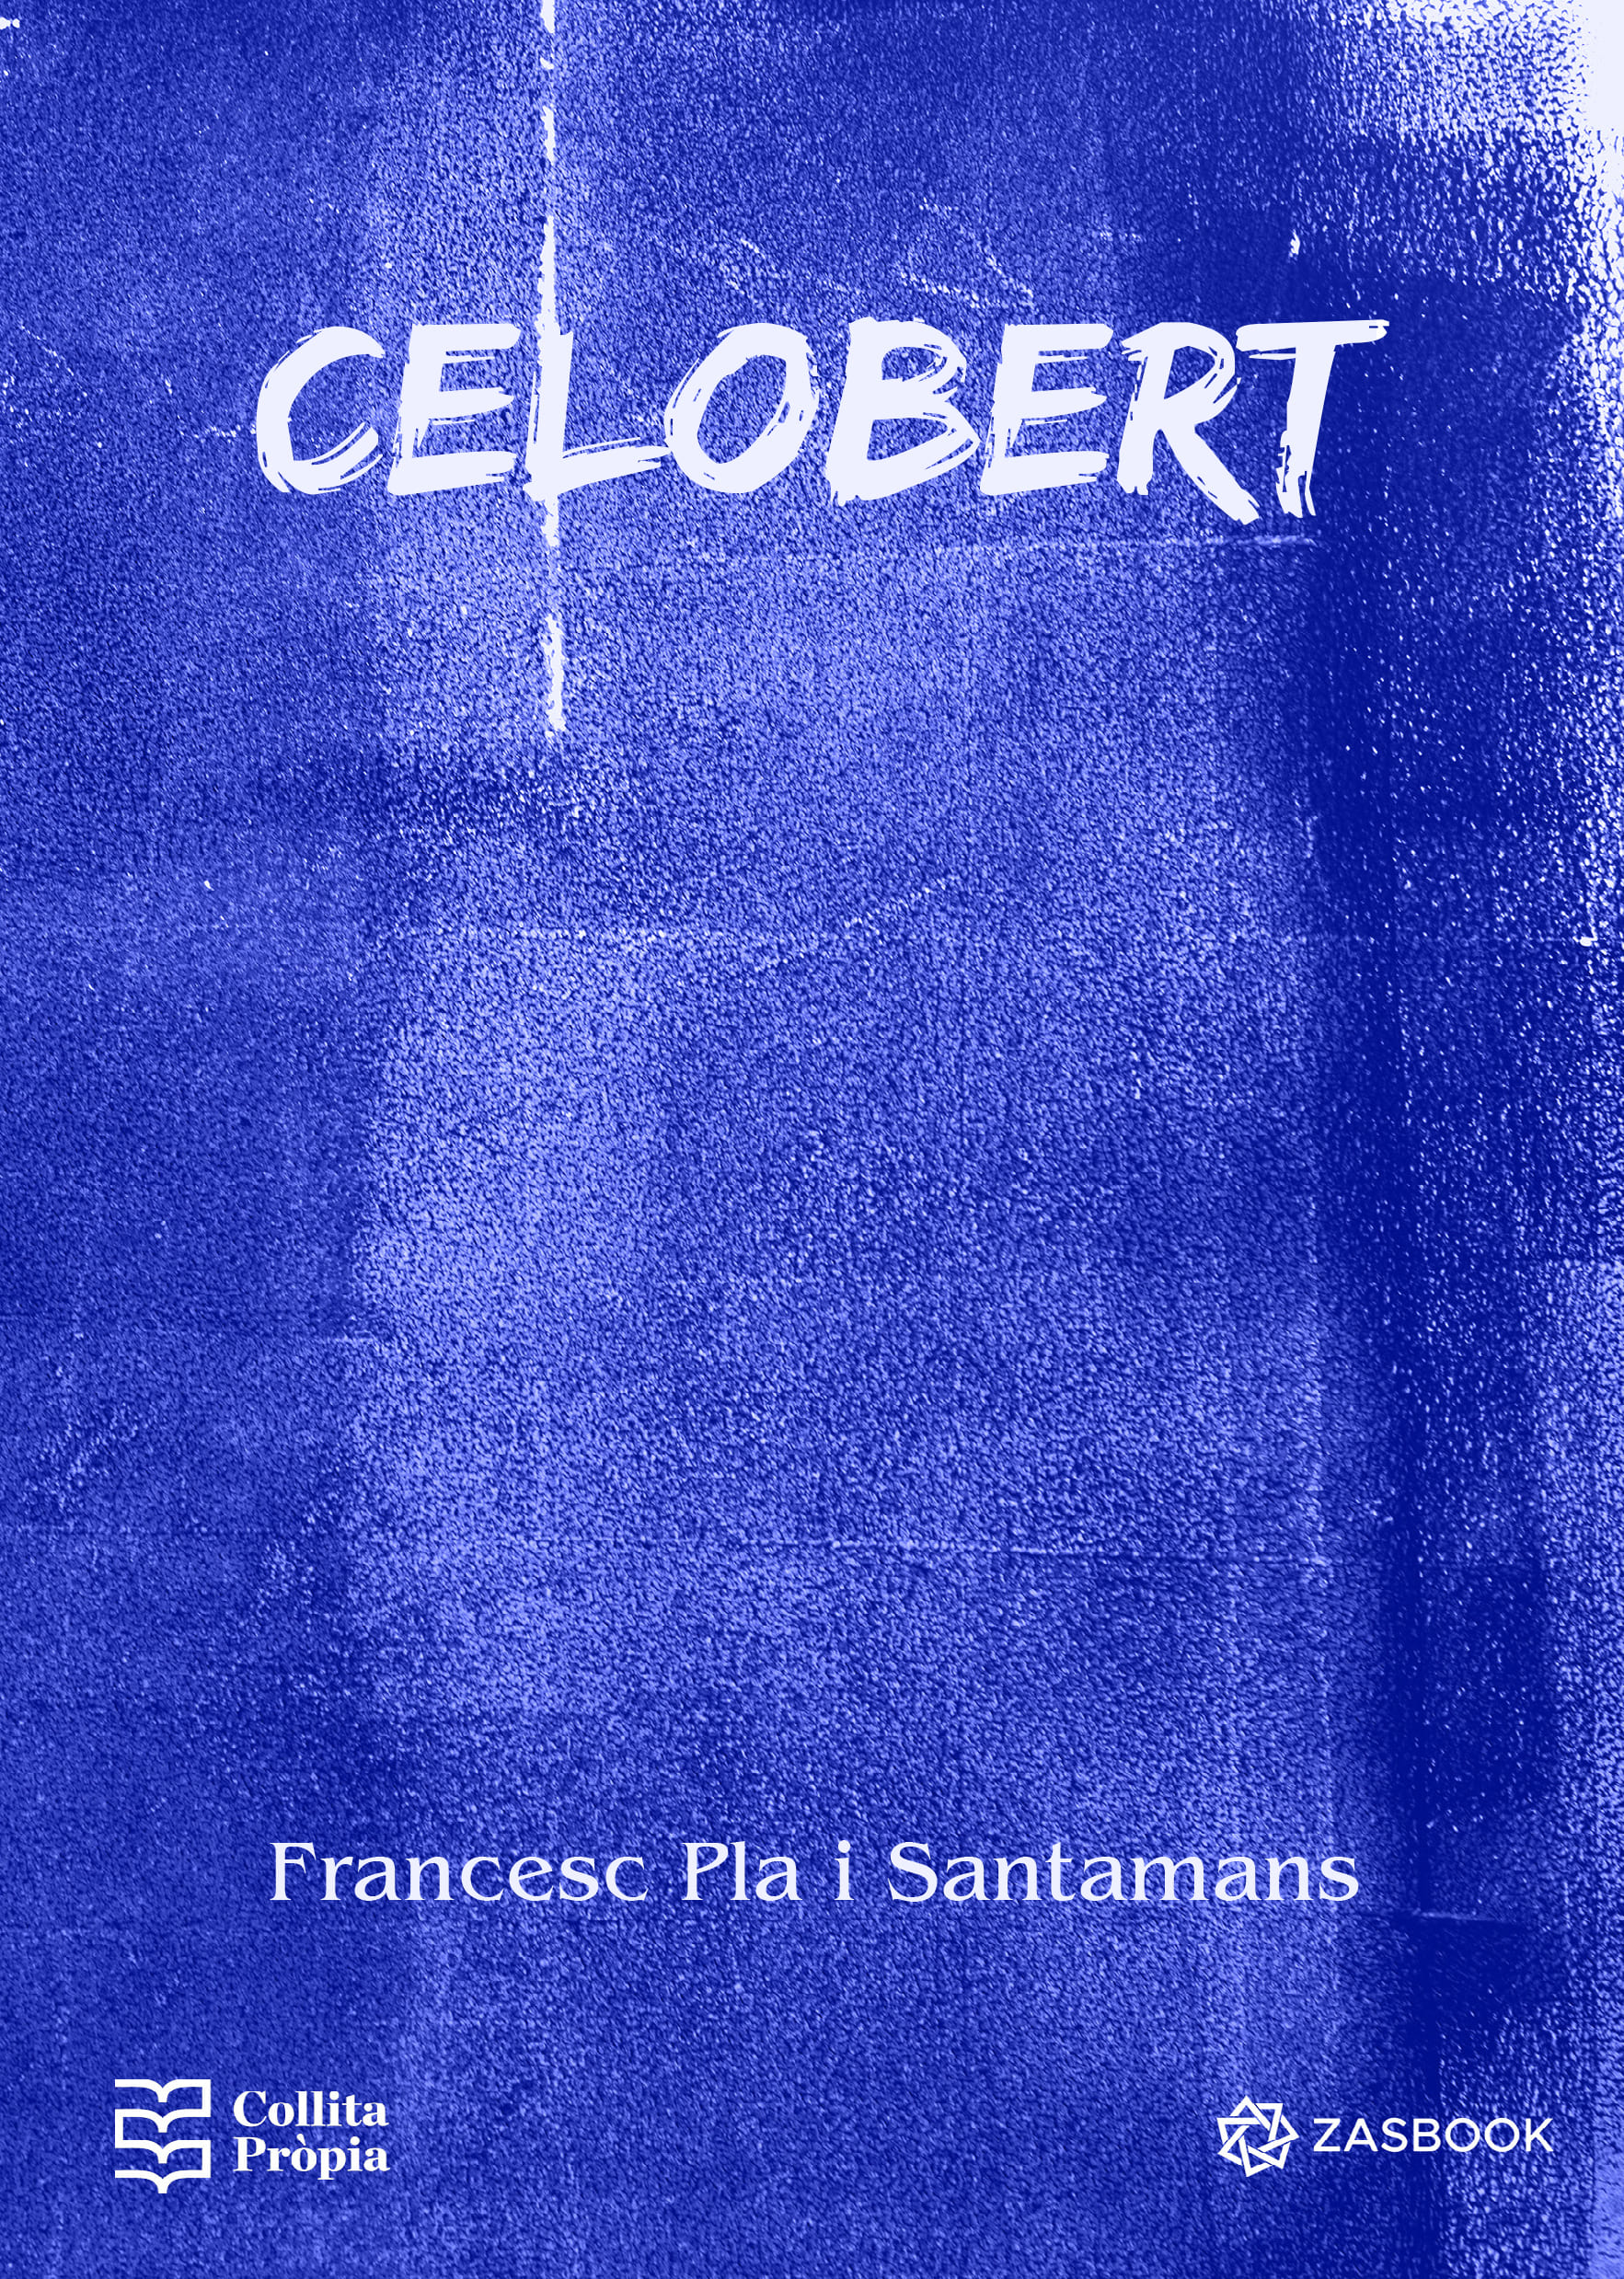 Francesc Pla - Celobert (1)